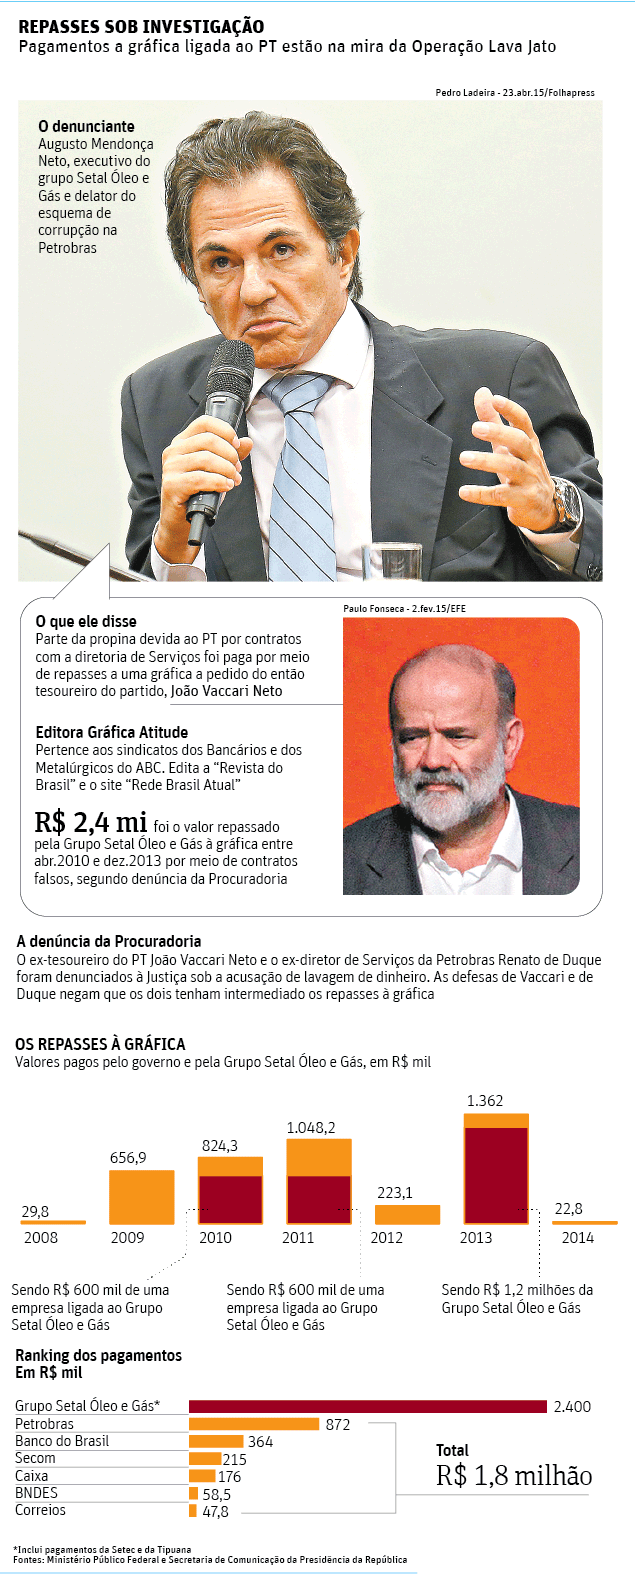  Folha de So Paulo - 28/04/2015 - PETROLO: Repasses sob invetigao - Editoria de Arte/Folhapress